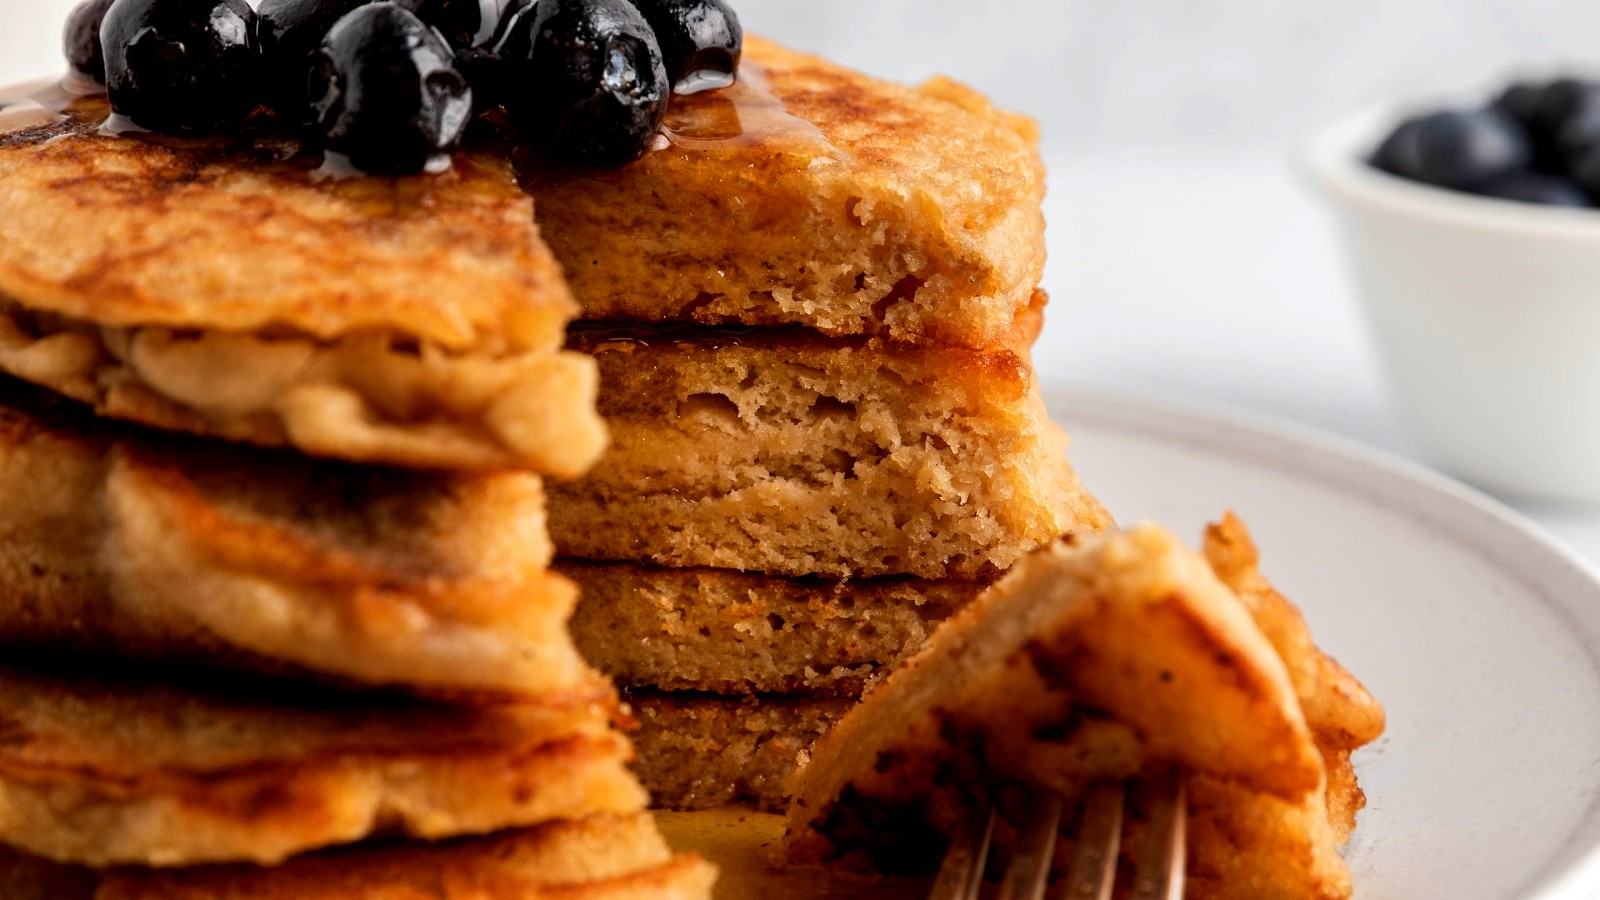 Image of Gluten Free Pancakes